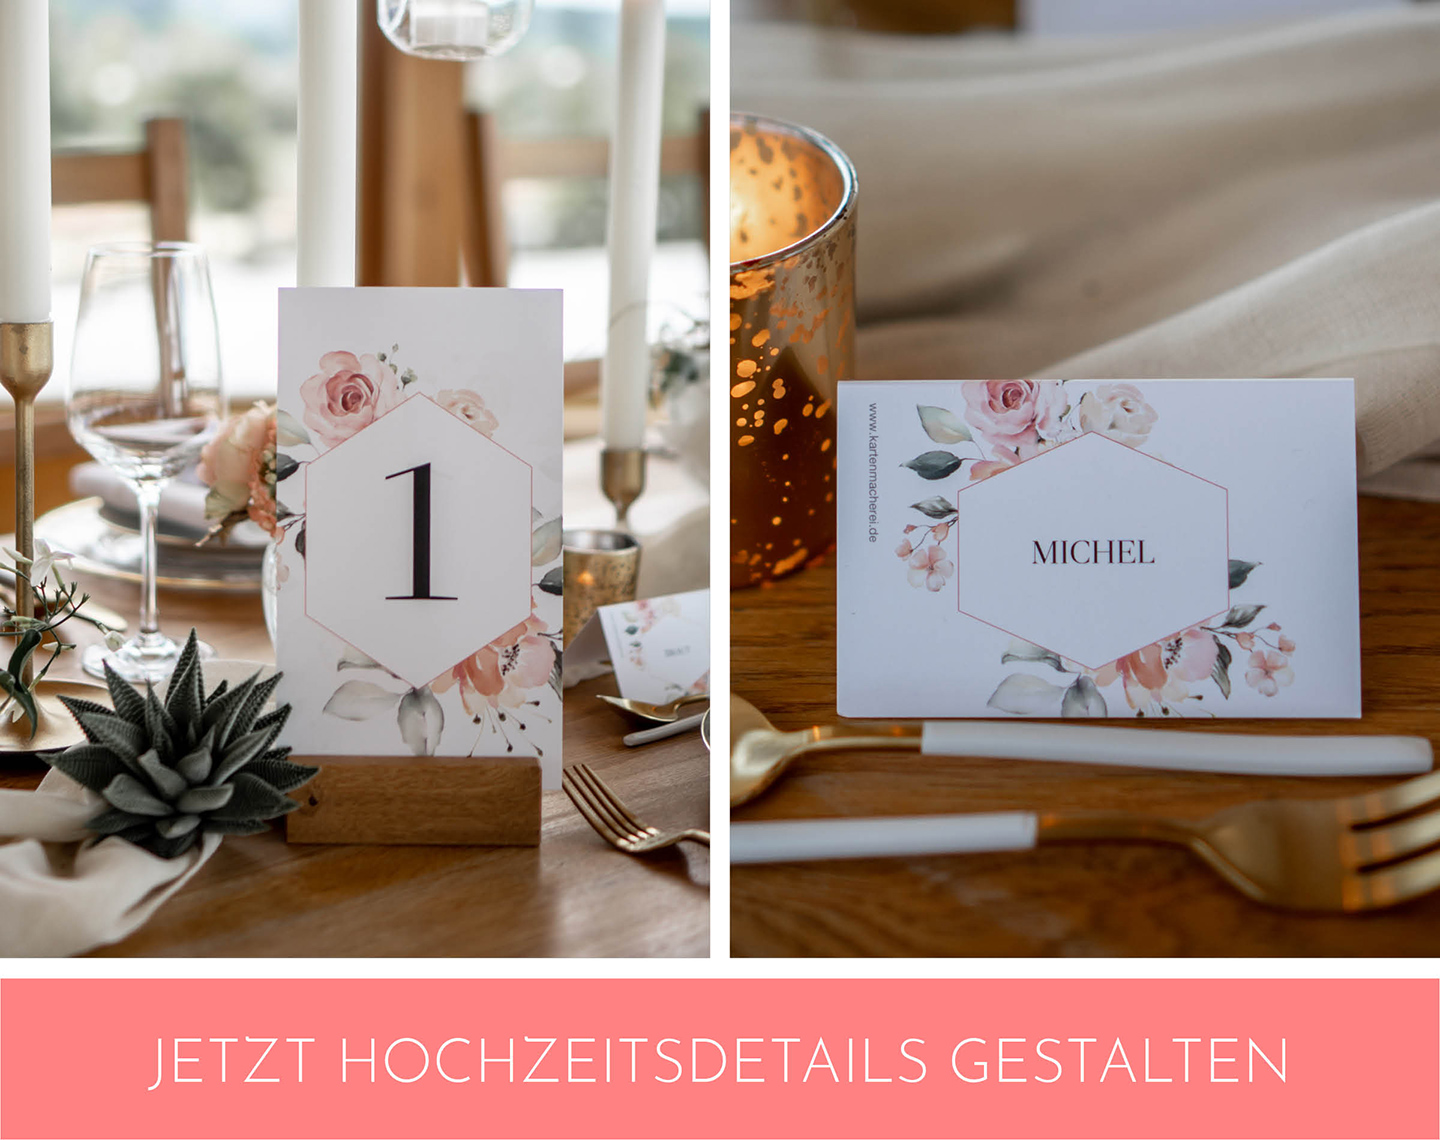 florale Hochzeitspapeterie wie Tischkärtchen und Tischnummer zieren die Hochzeitstafel